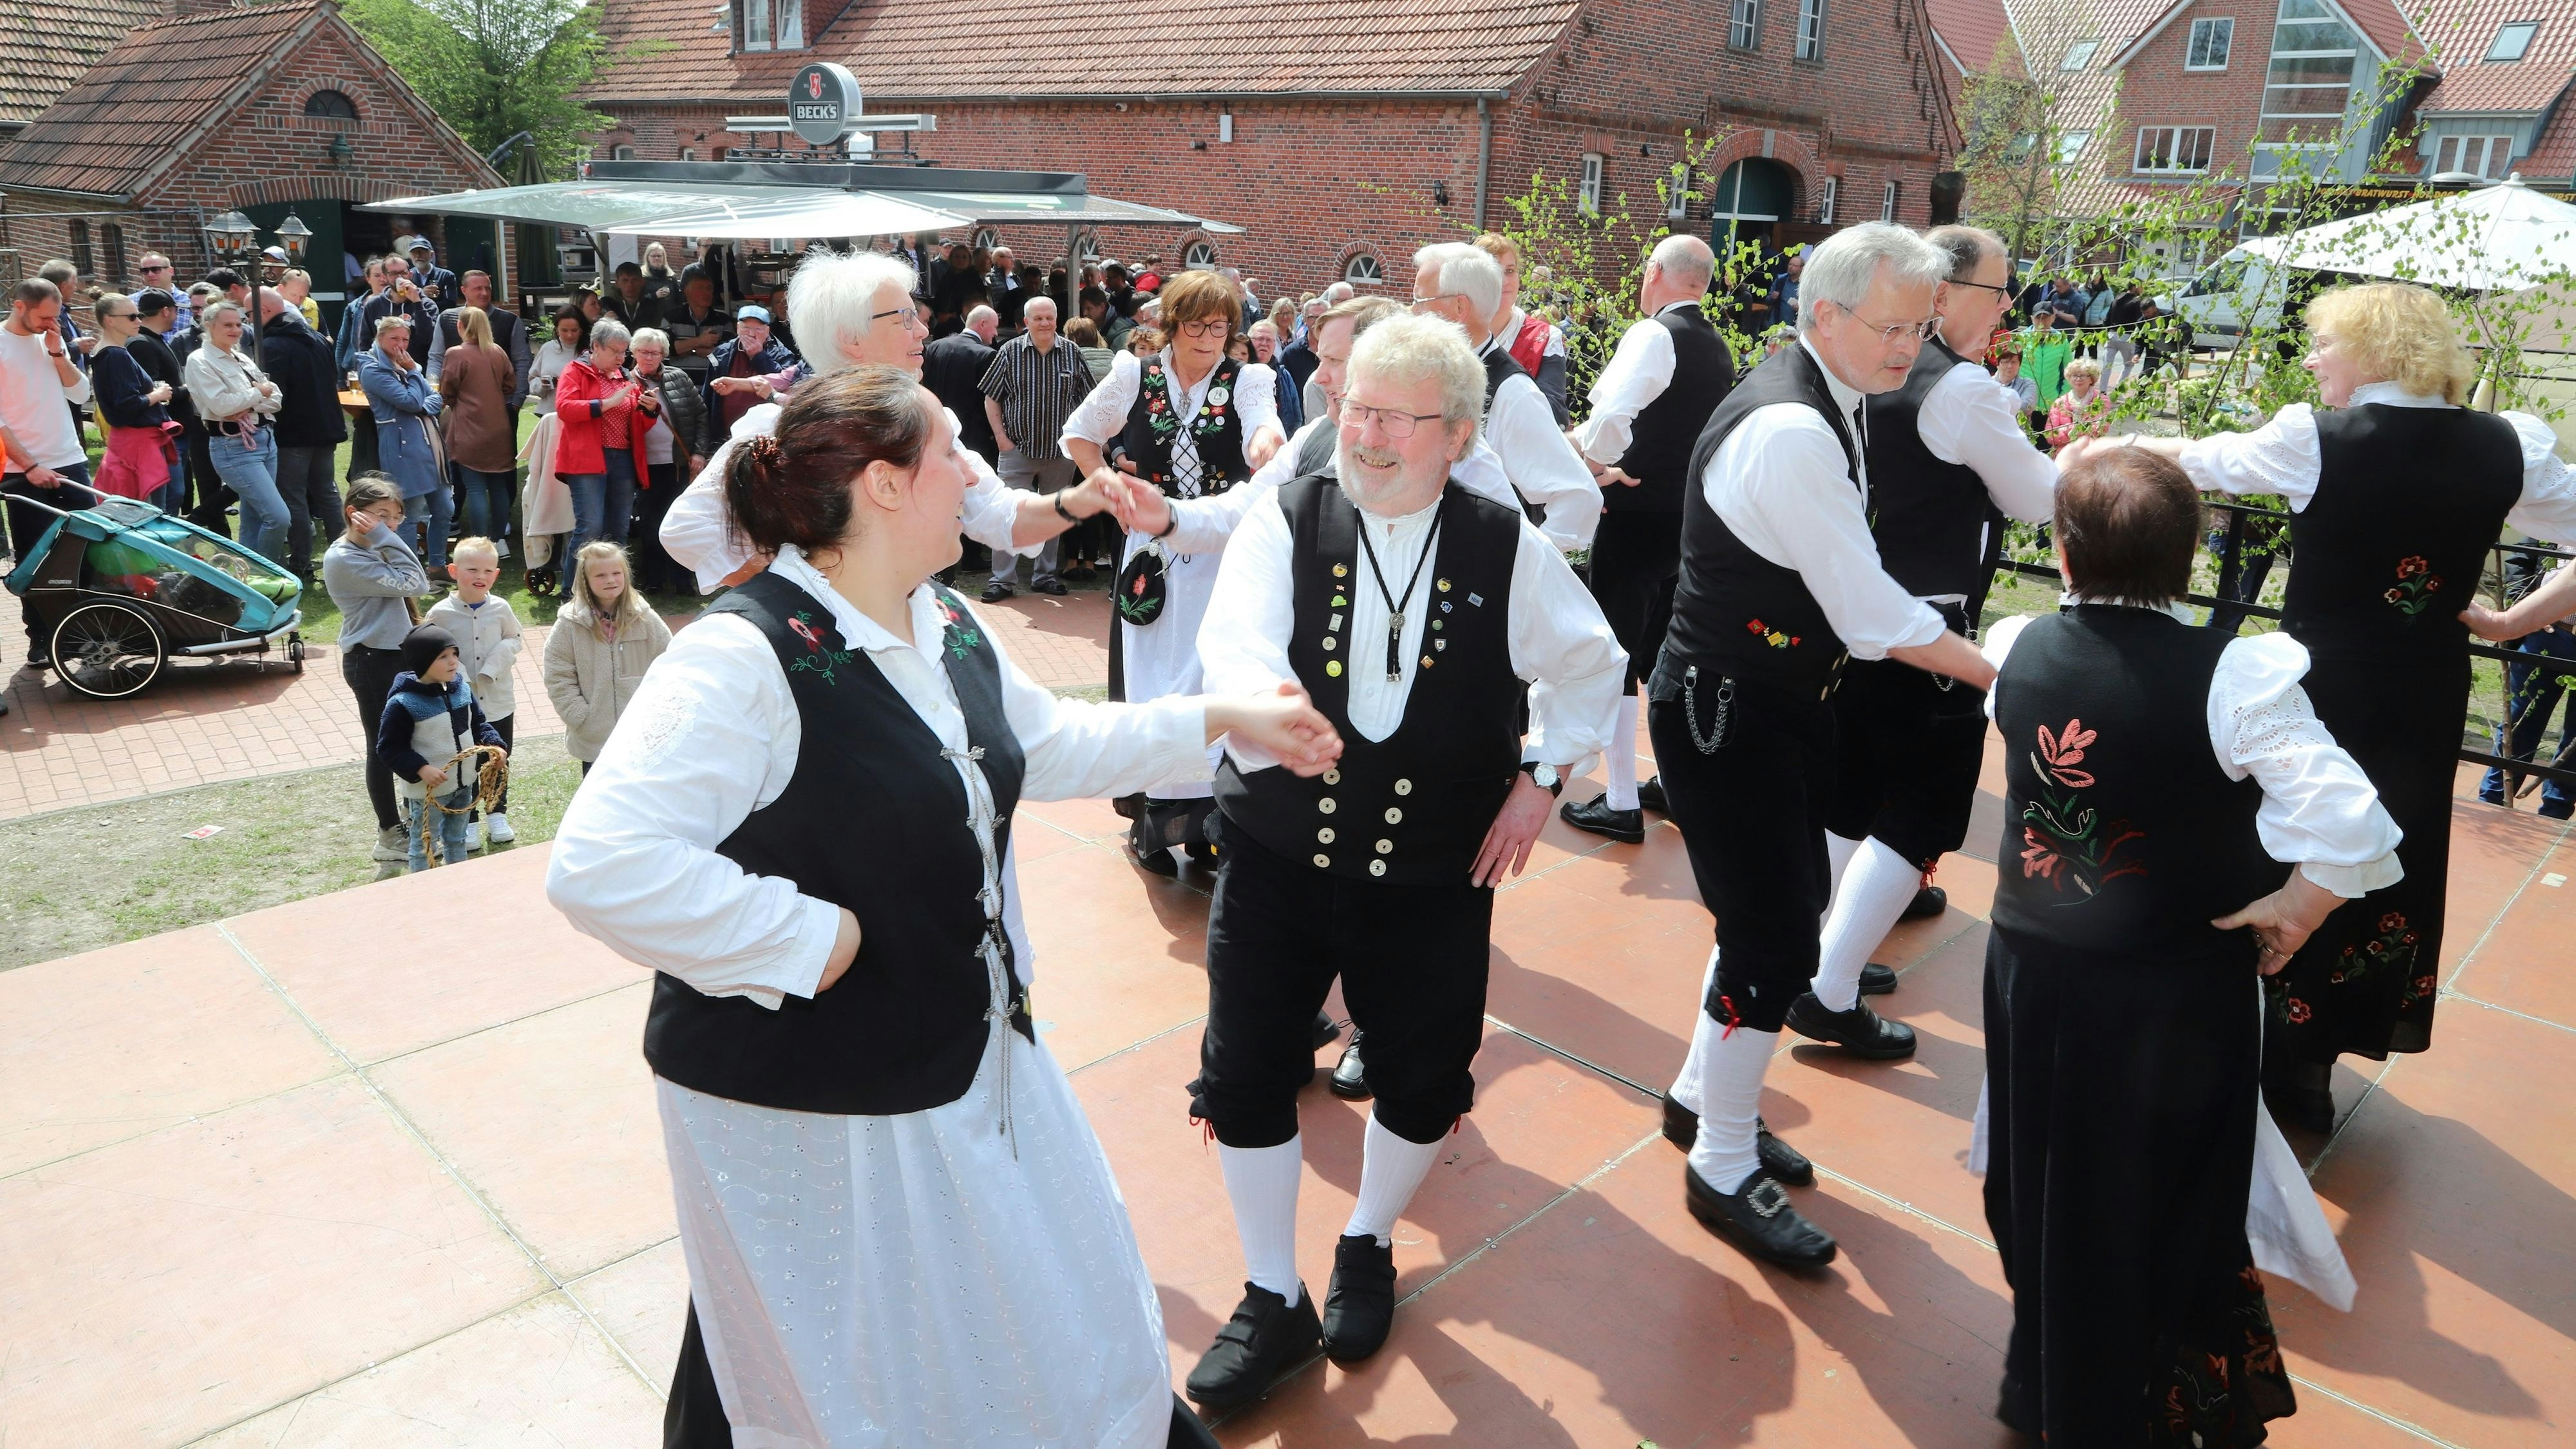 Flotte Tänze: Die Volkstanzgruppe der DJK Bösel erfreute viele Besucher. Foto: C. Passmann